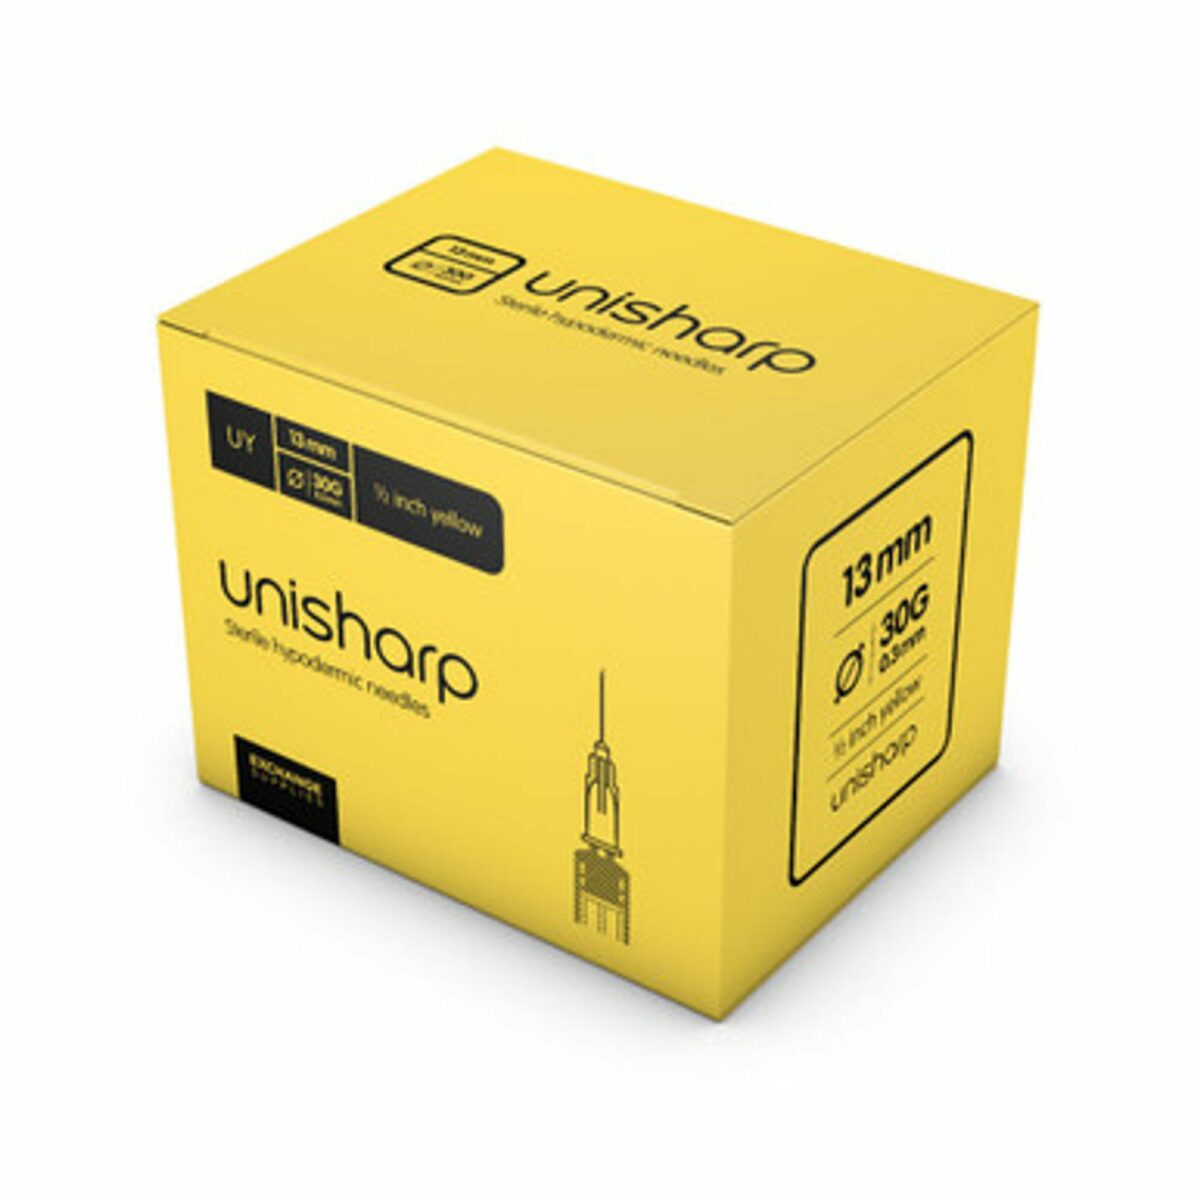 unisharp 30g yellow 0.5 inch 13mm unisharp needles 56397 1 08010 54103